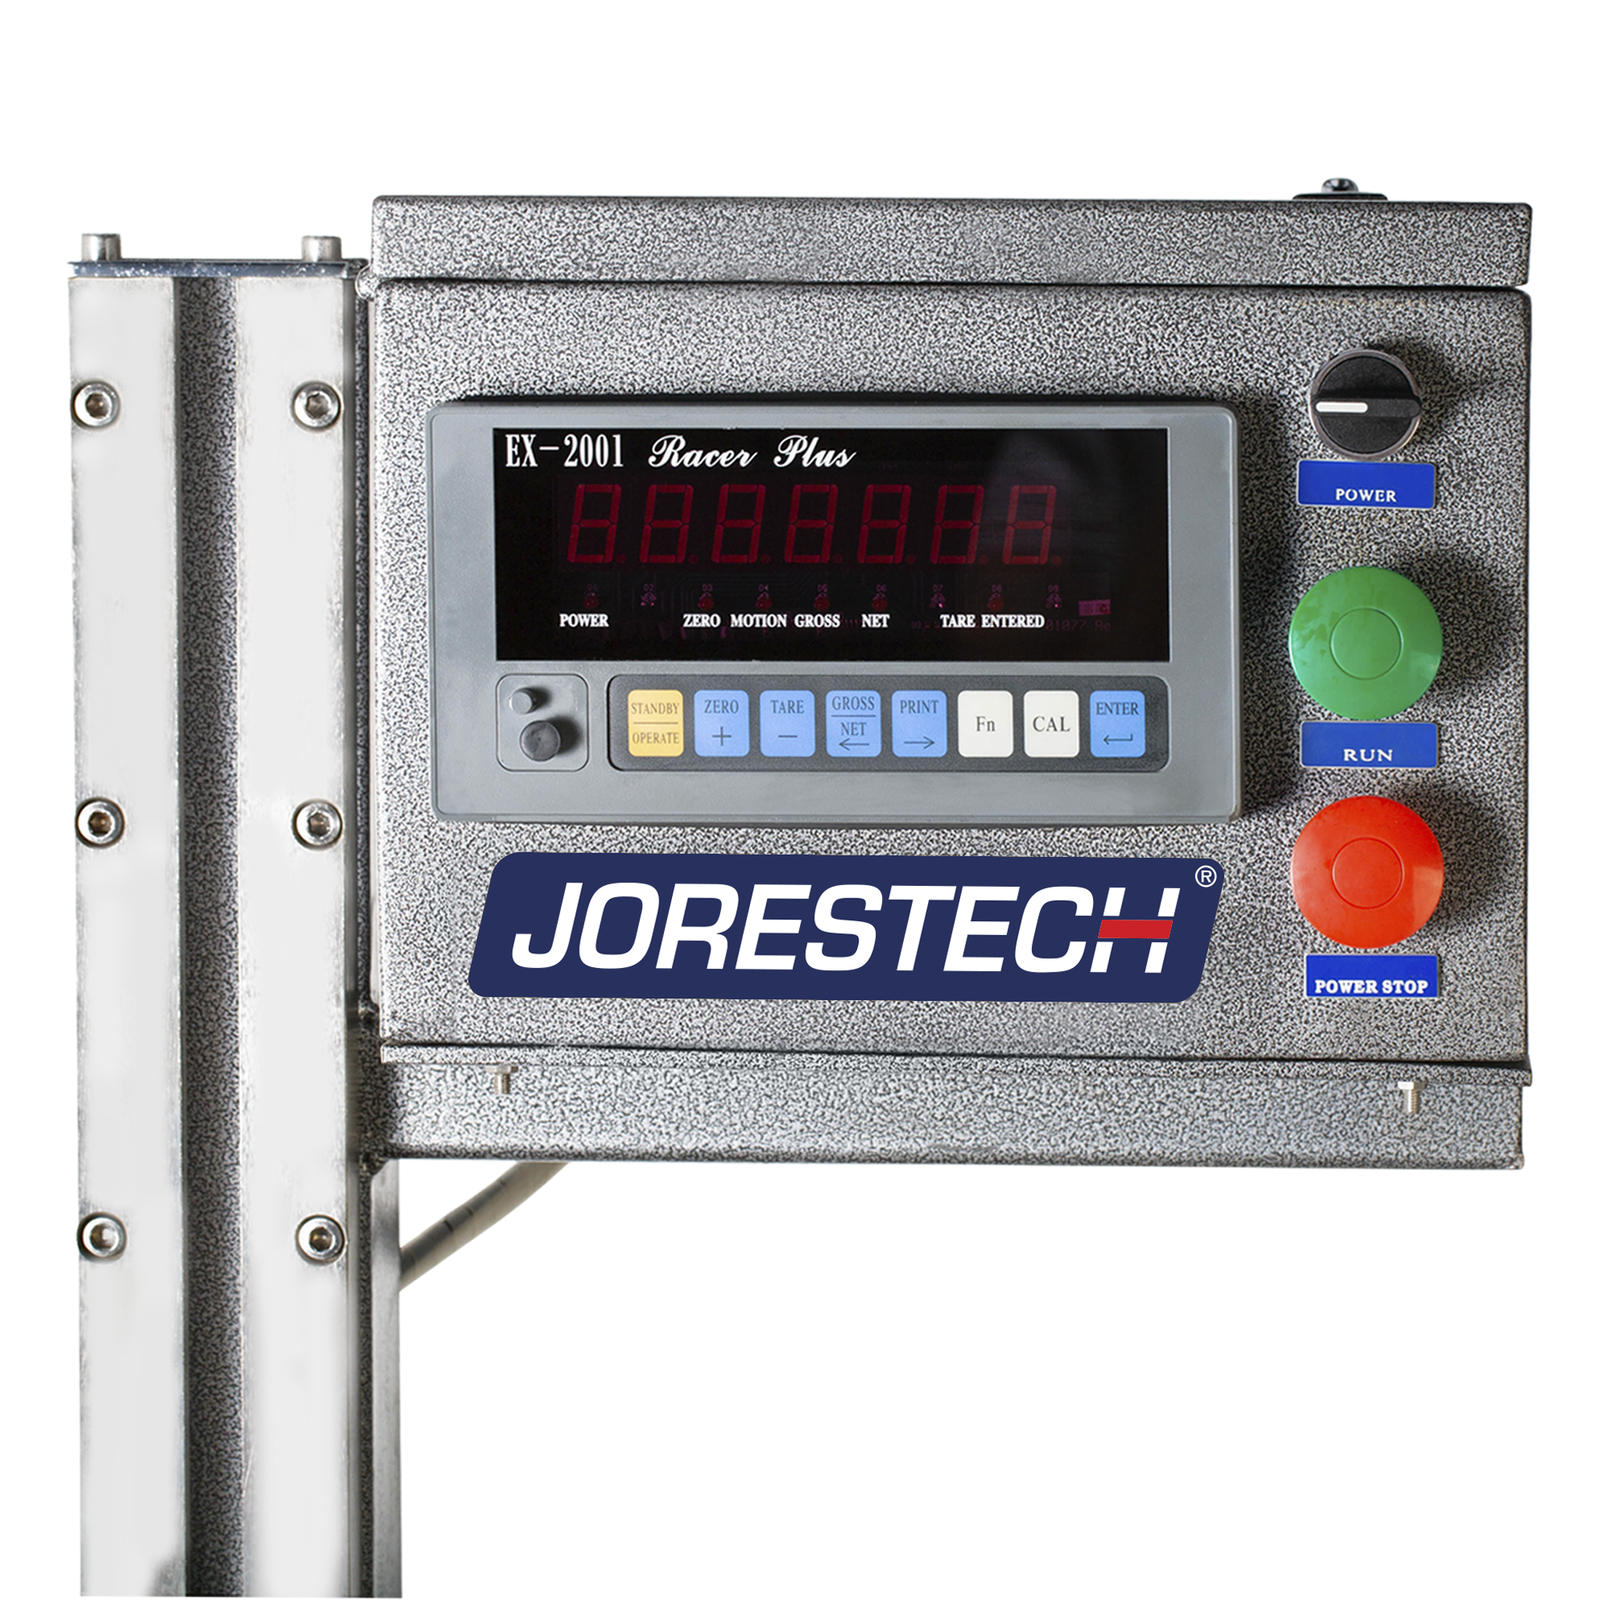 Closeup of the digital control panel of the jorestech liquid net weight filler